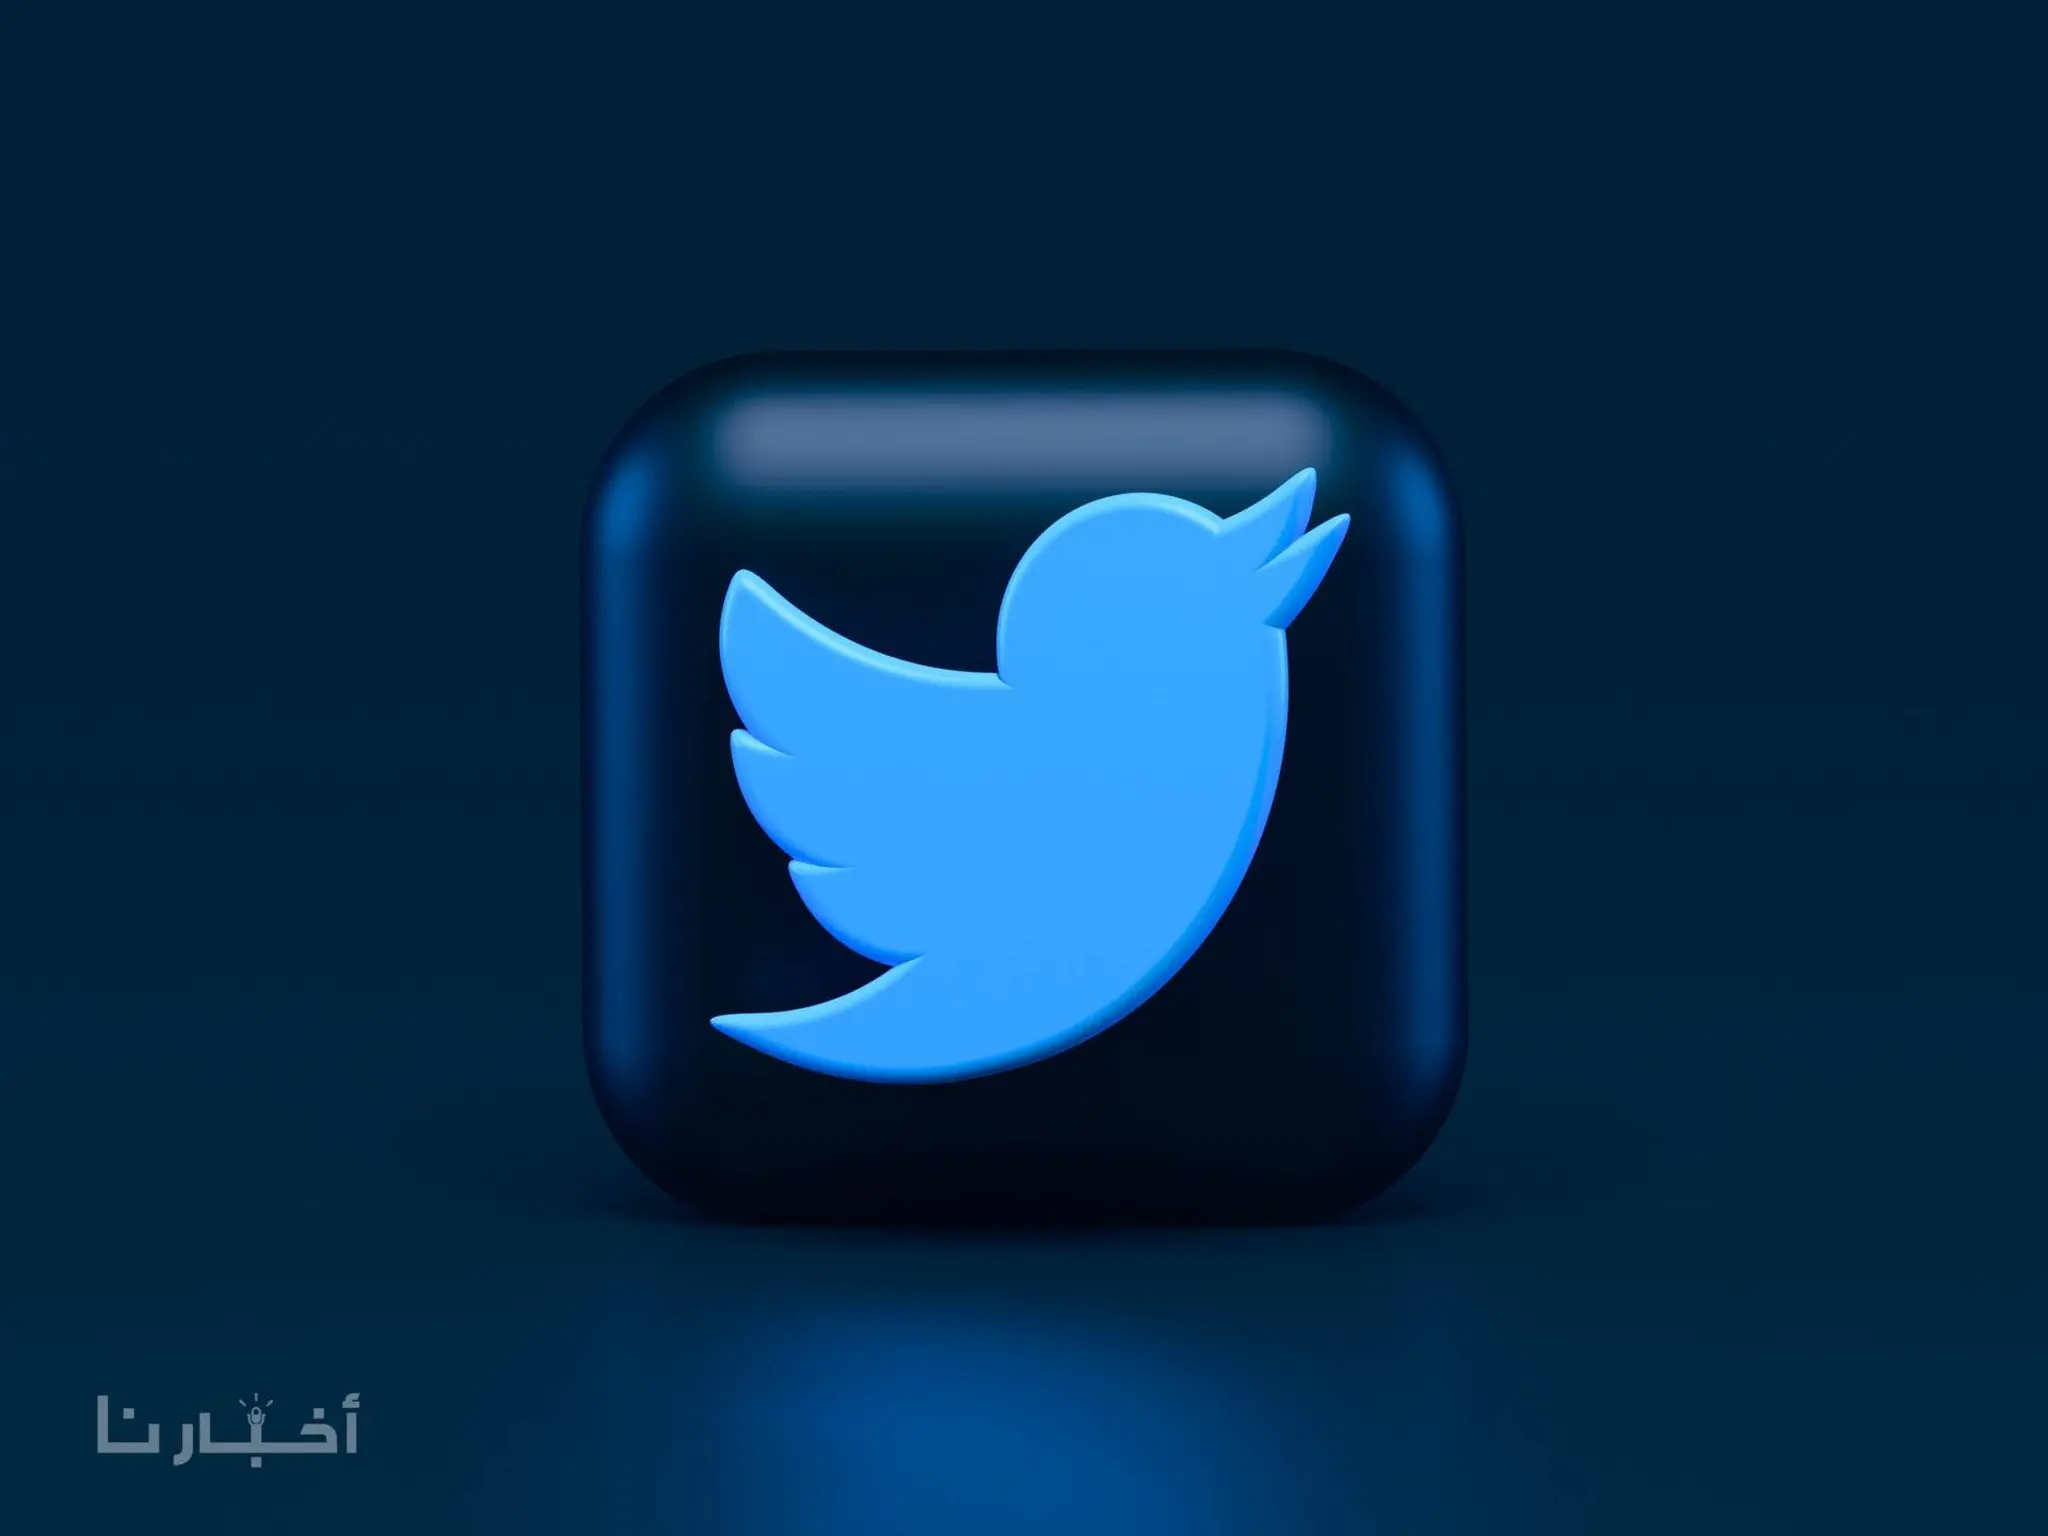 تويتر Twitter تضع رسوما على الشركات التجارية للاحتفاظ بالعلامة الذهبية